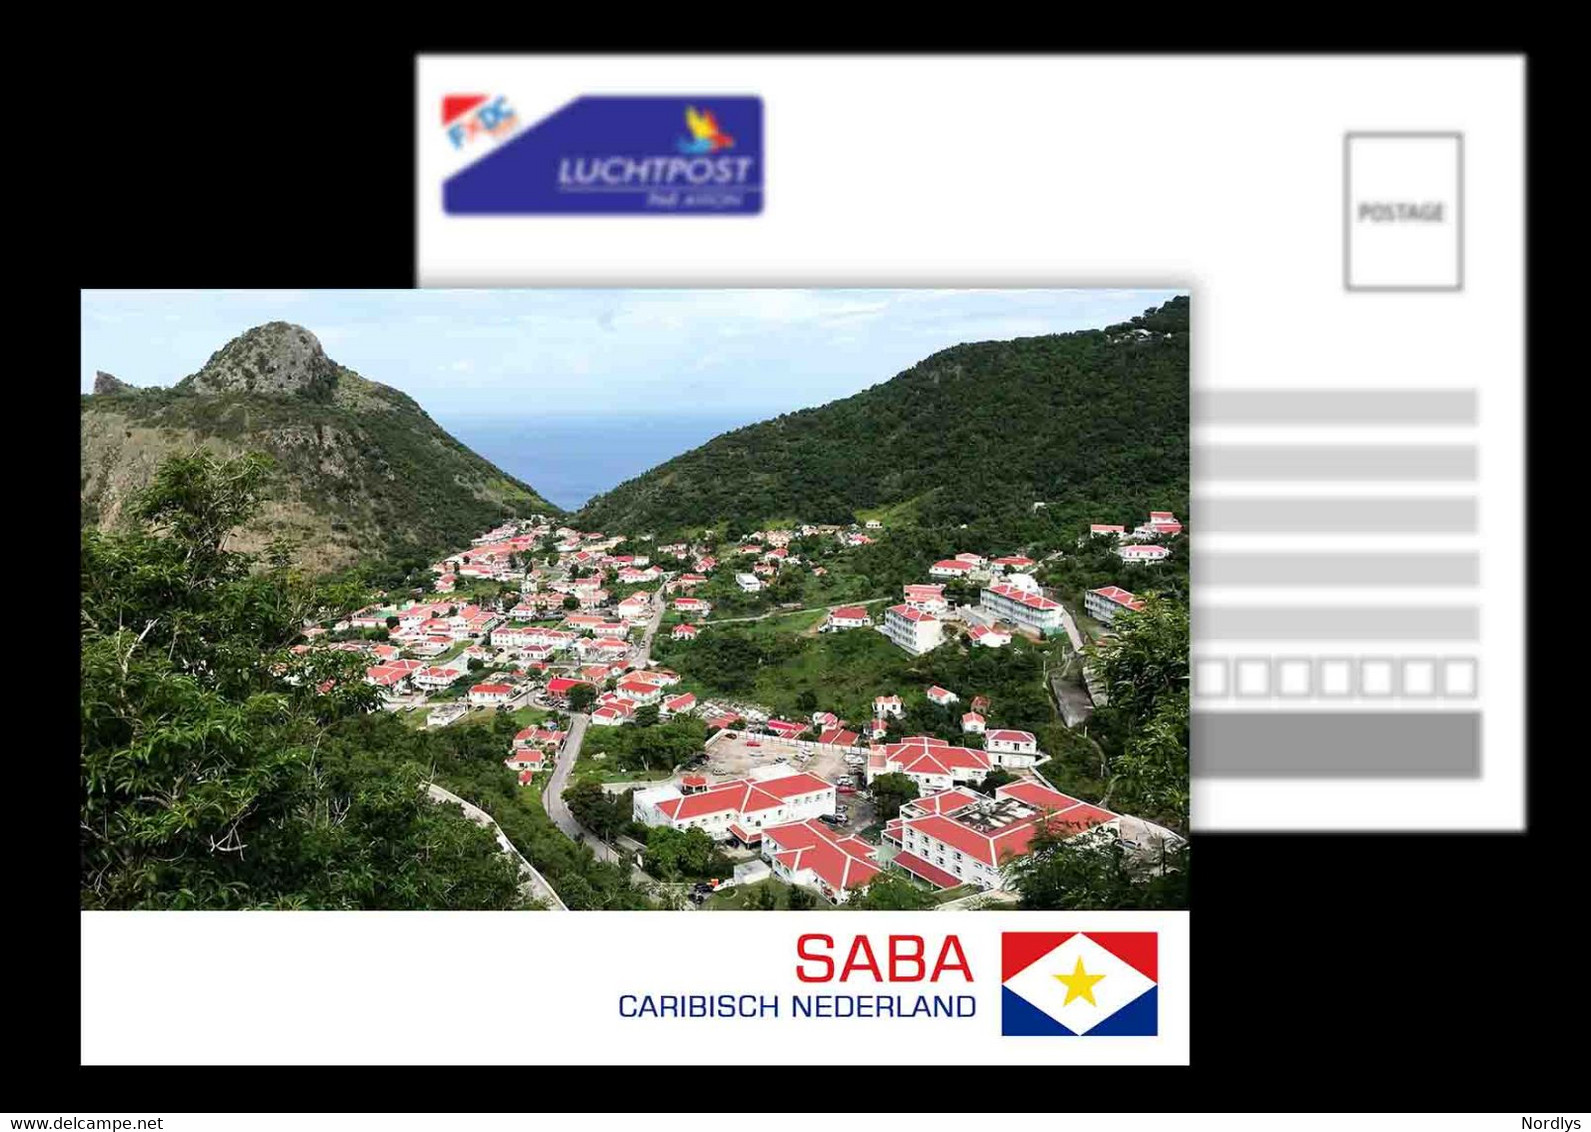 Saba / Caribisch Nederland / Dutch Caribbean / Postcard /View Card - Saba